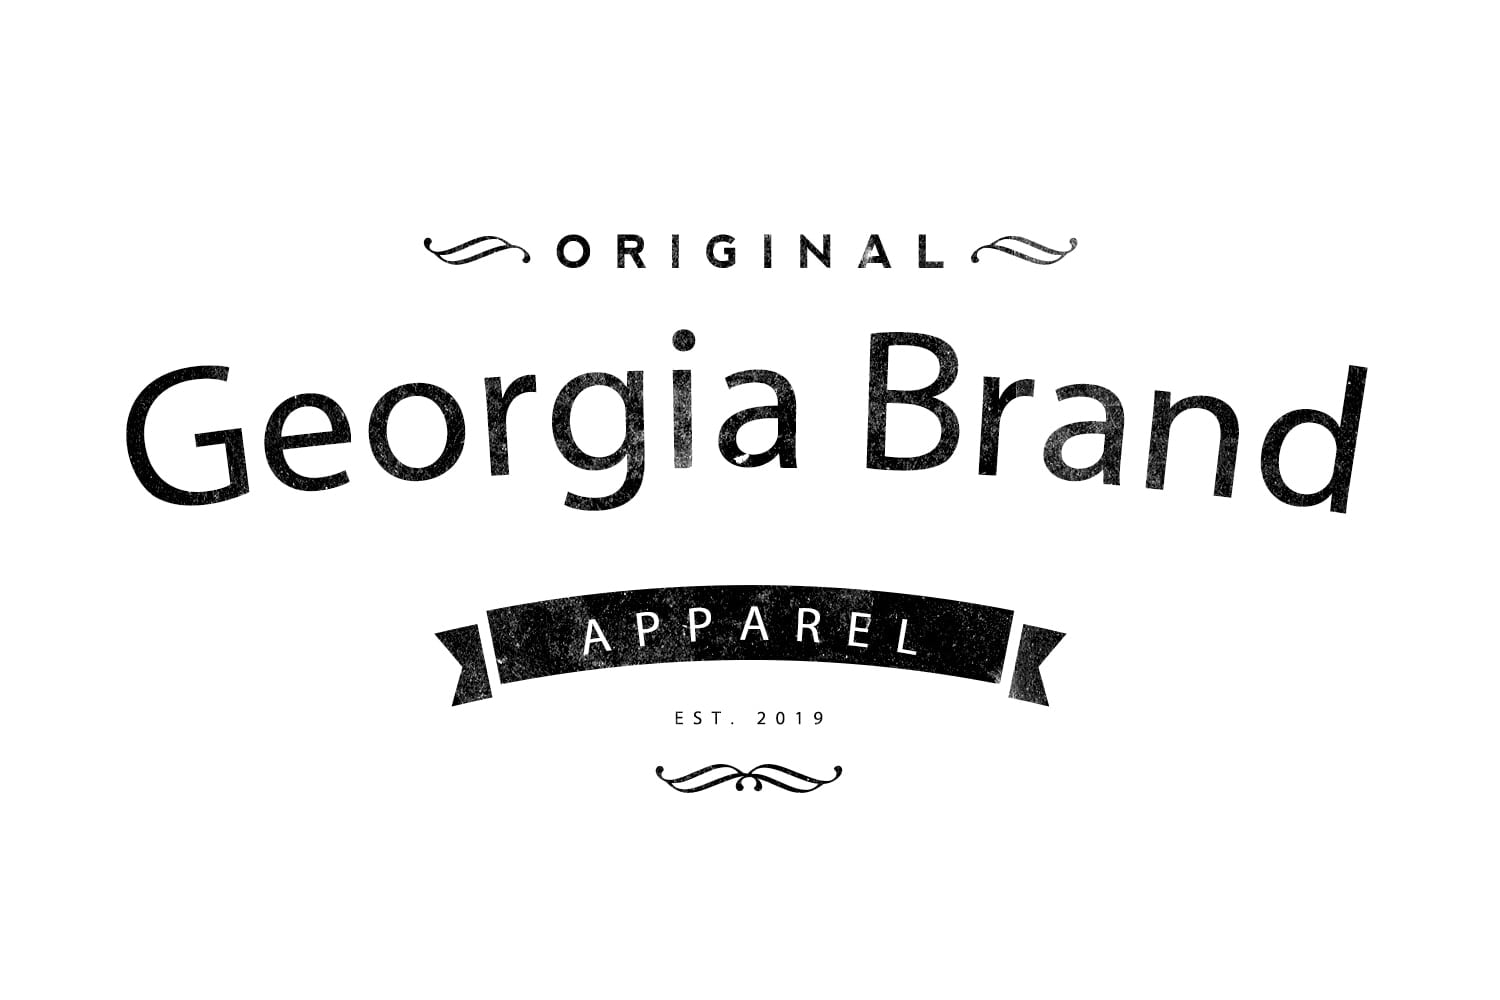 The Georgia Brand